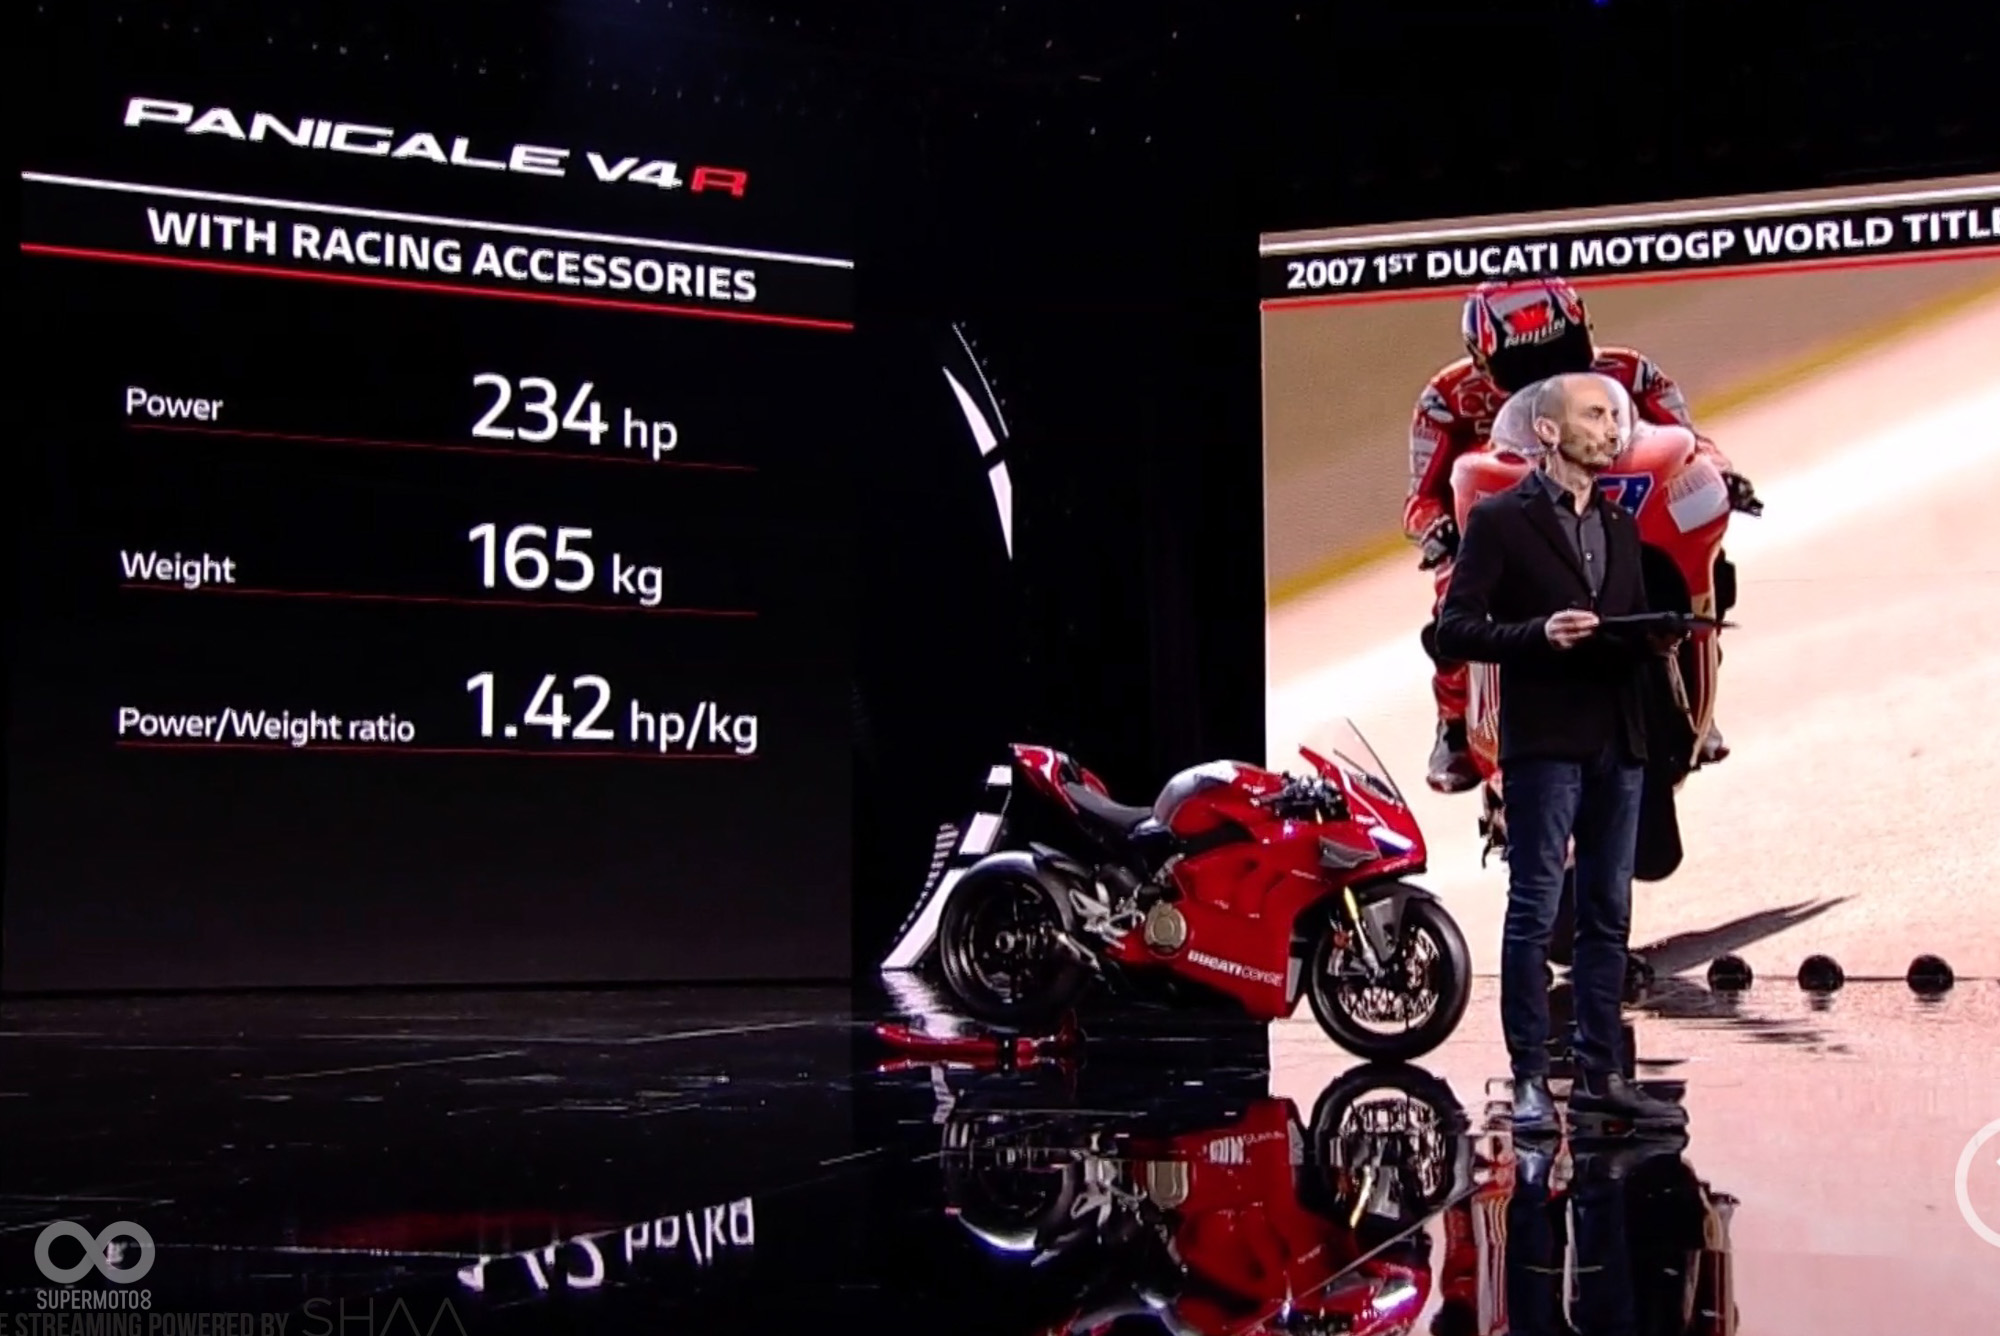 Ducati Panigale V4 R所搭載引擎為該集團旗下動力最強的心臟